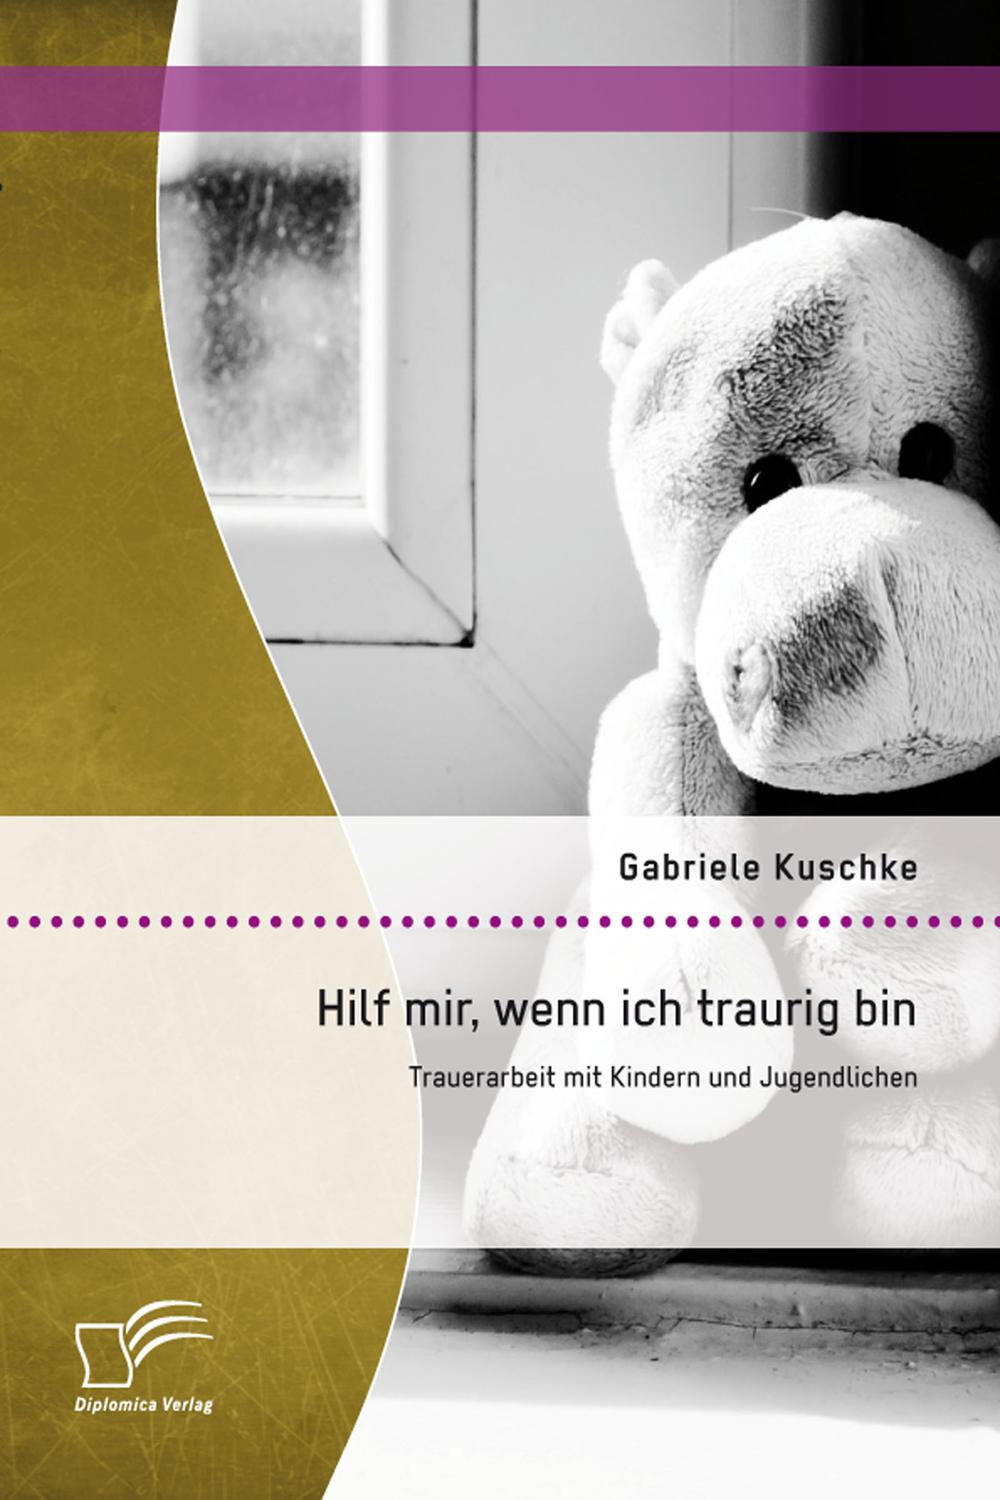 Hilf mir, wenn ich traurig bin: Trauerarbeit mit Kindern und Jugendlichen - Gabriele Kuschke